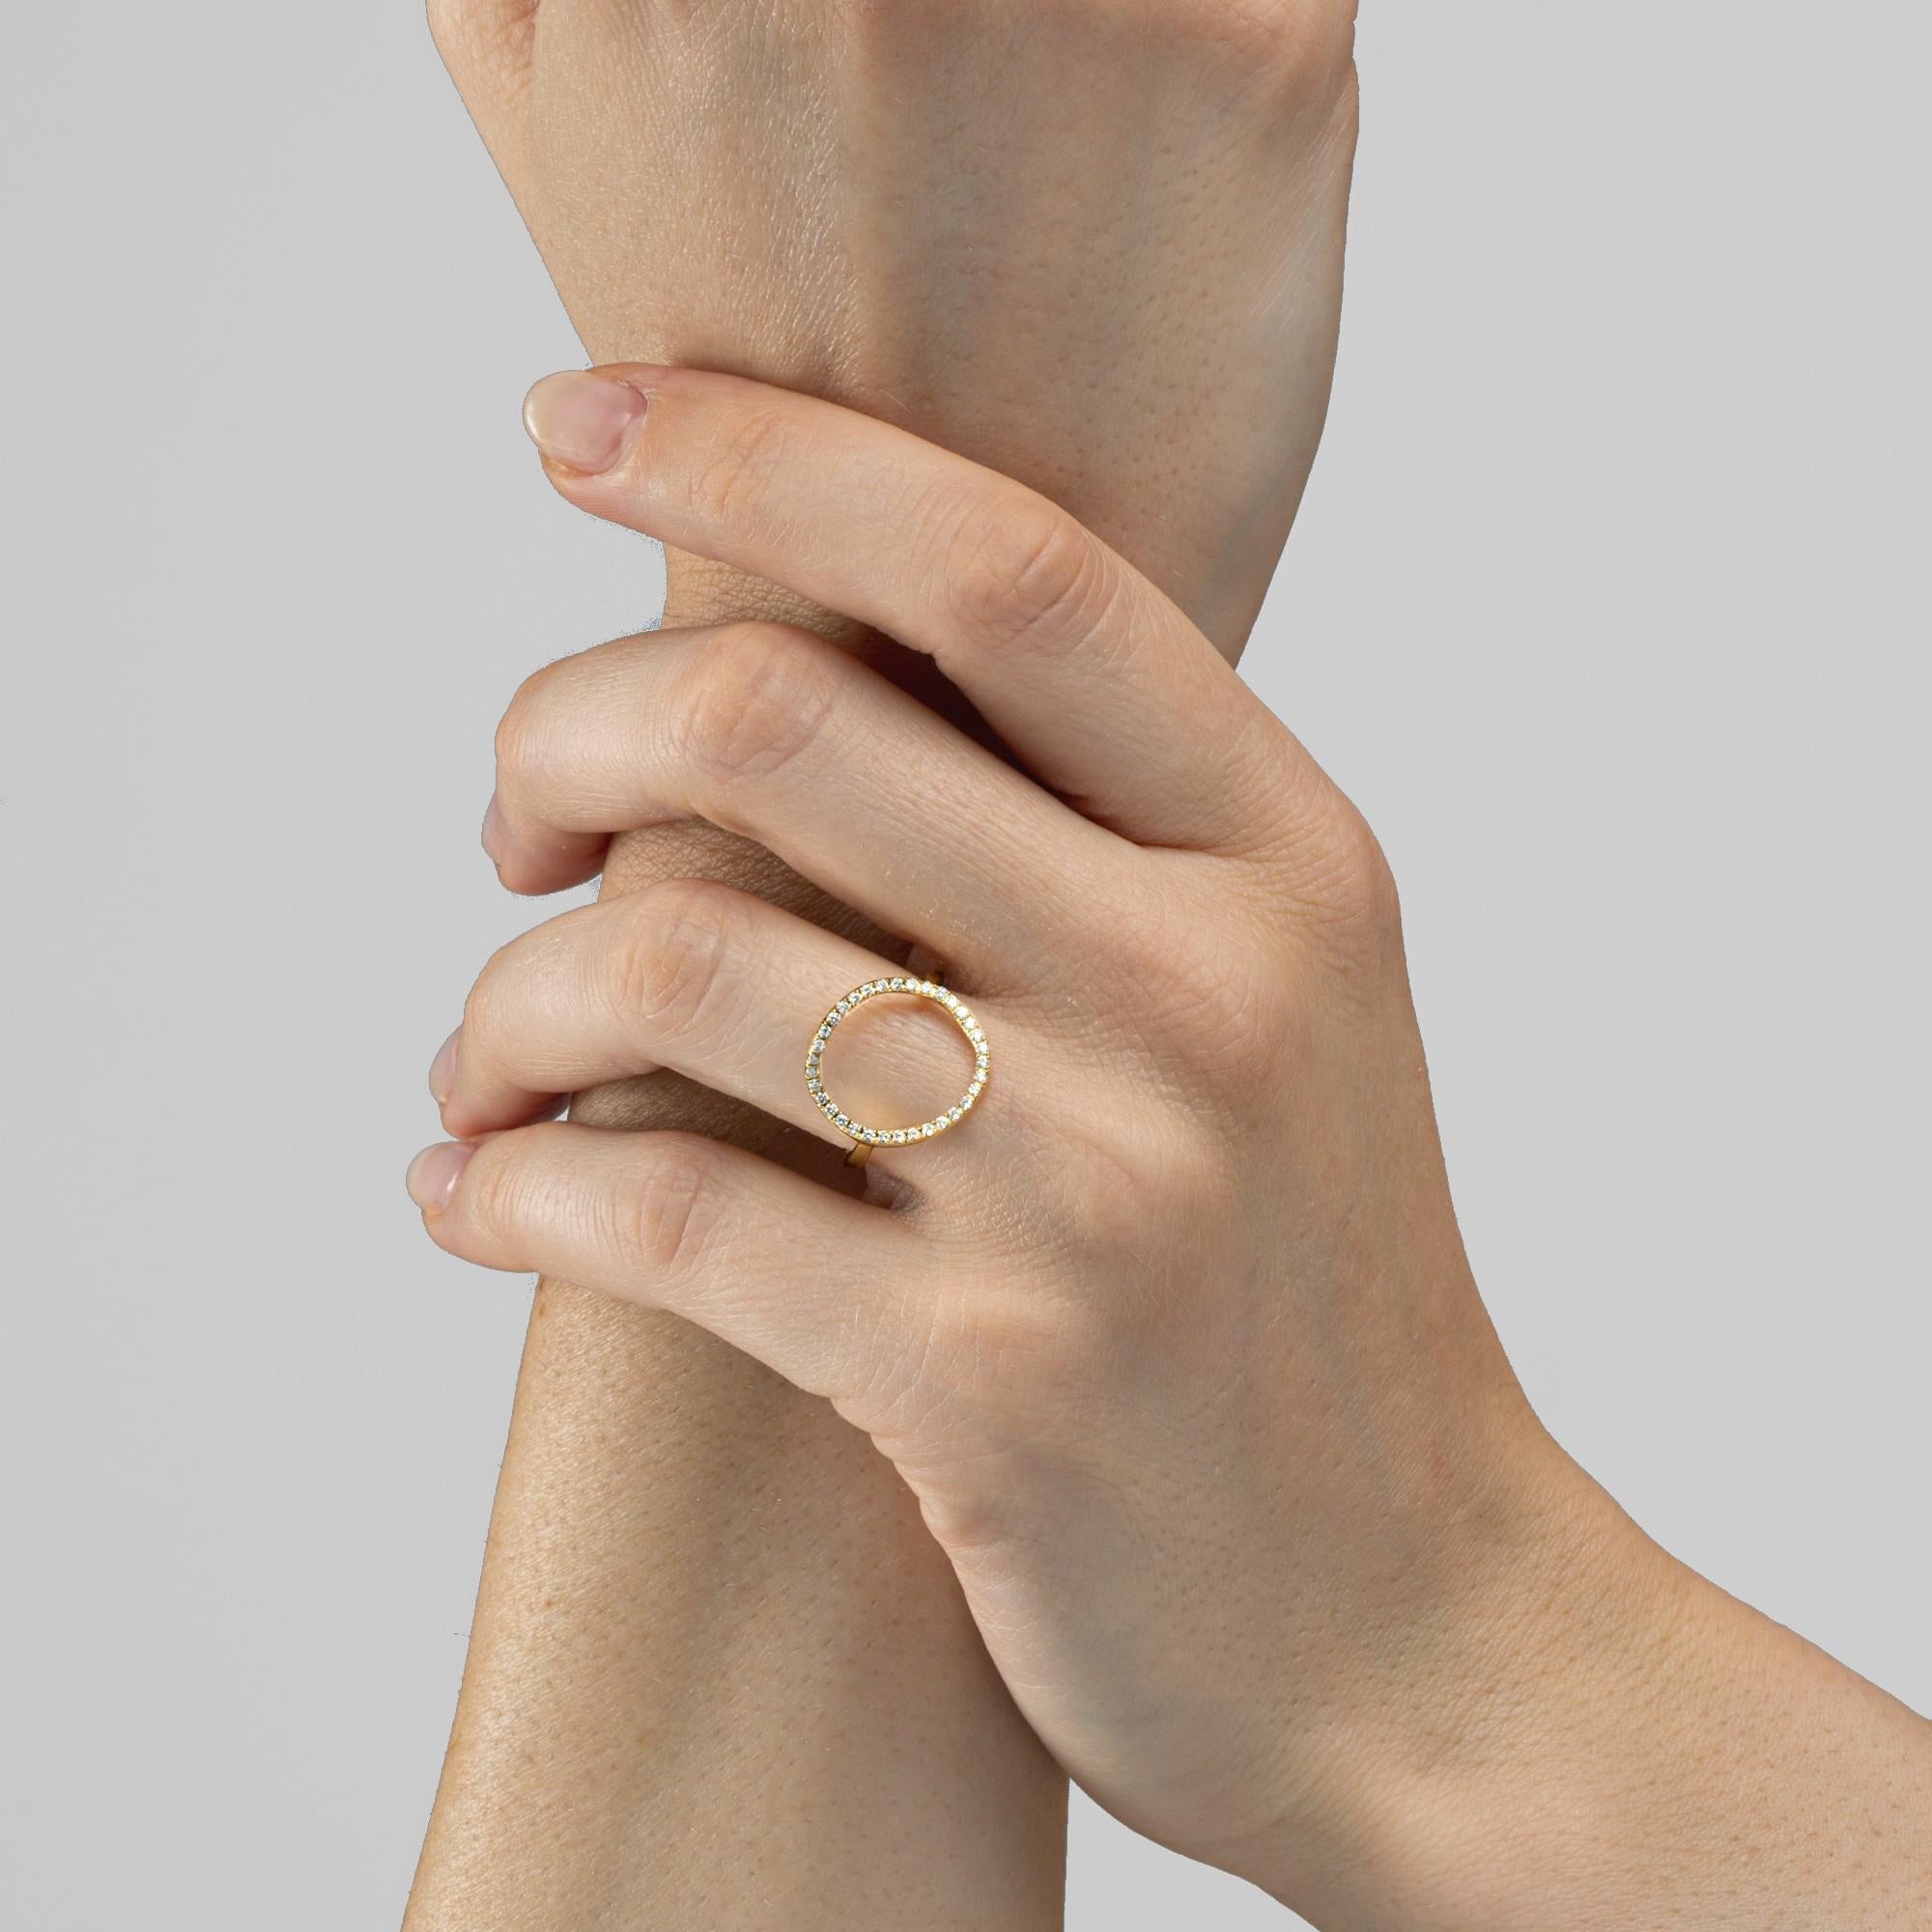 Alex Jona Design Kollektion, handgefertigt in Italien, offener Ring aus 18 Karat Gelbgold, besetzt mit 0,22 Karat weißen Diamanten (Farbe F-G, Reinheit VVS). US Größe 6, kann in der Größe angepasst werden. Abmessungen: 0.75 in. H x 0.63 in. B x 0,61